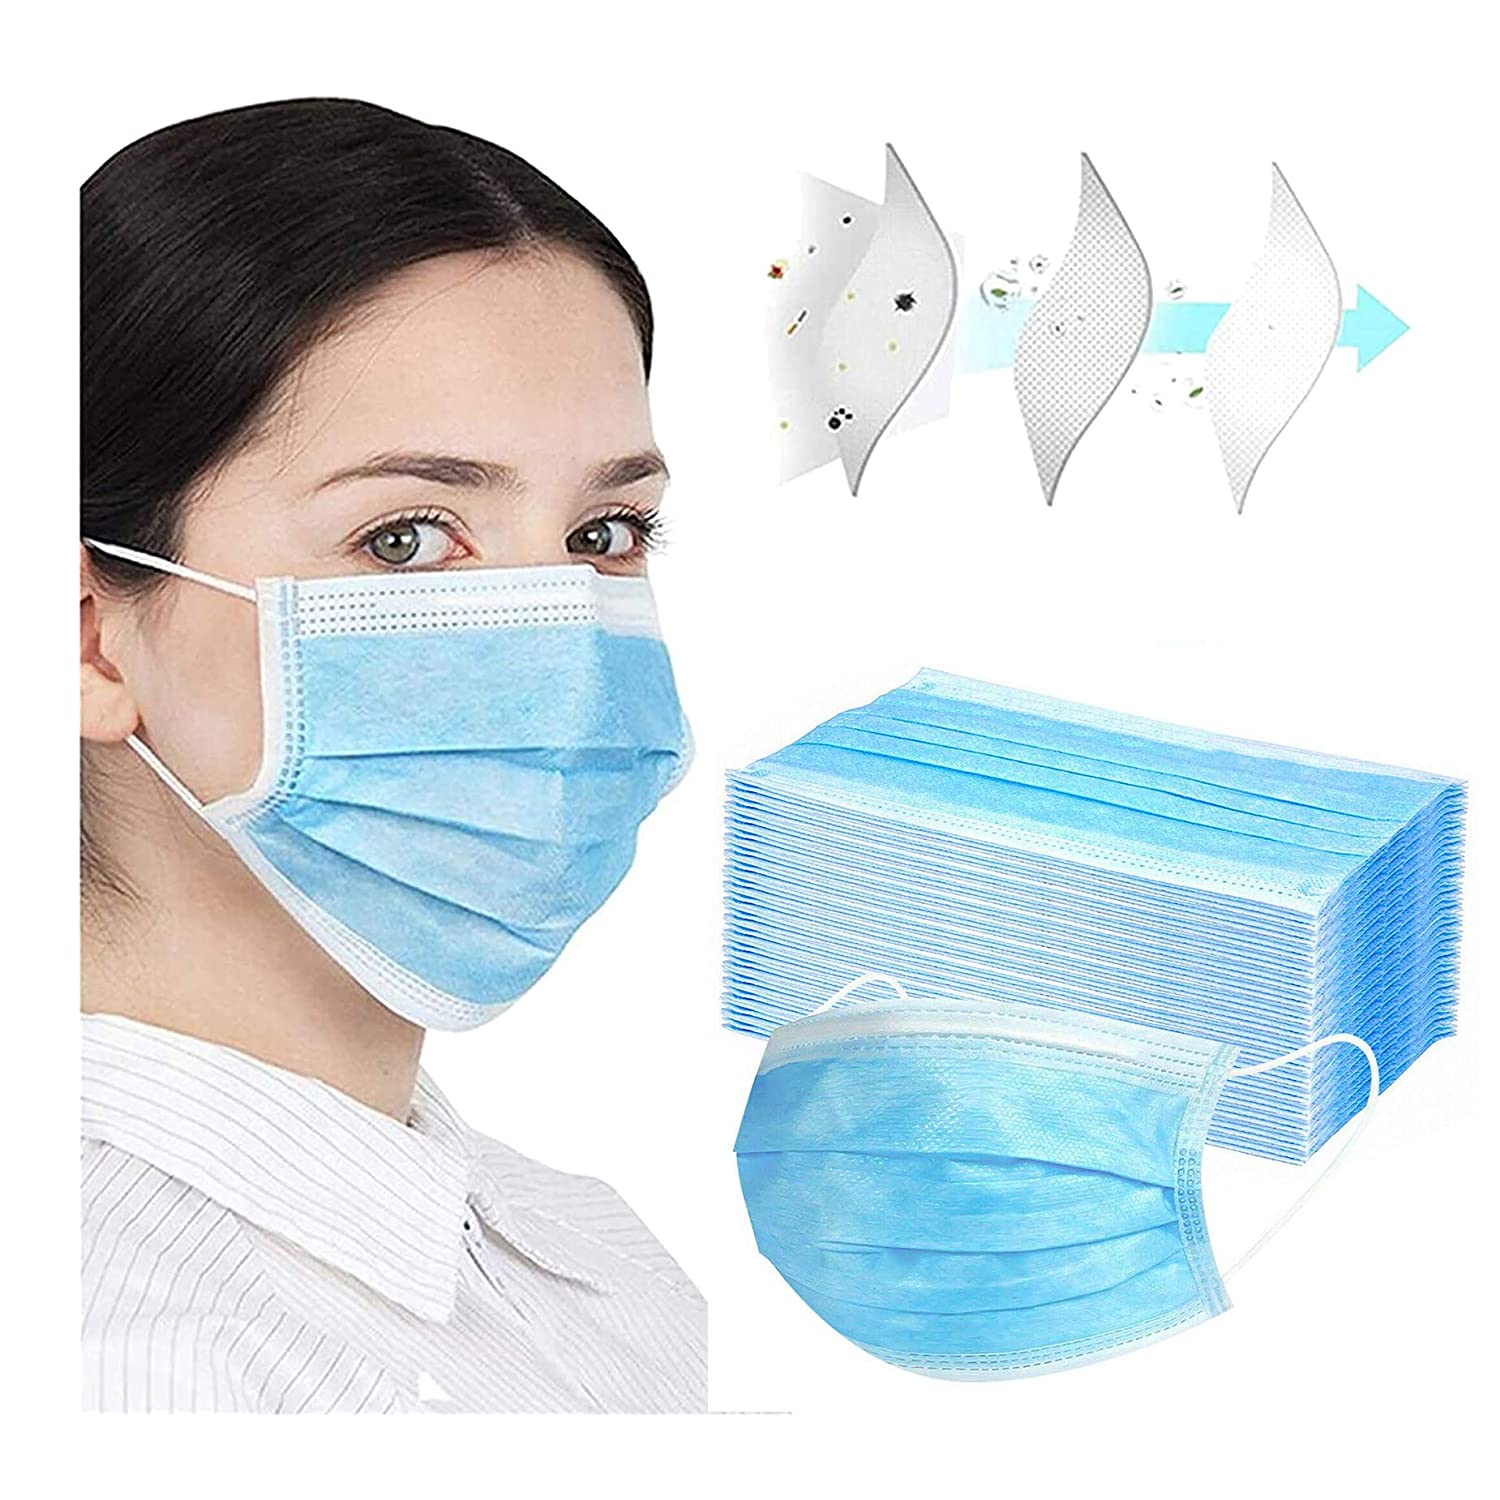 3Ply Disposable Protective Mask, 50 Masks in Box, Blue.-face mask-AZURA- Nail Supply American Gel Polish - Phuong Ni